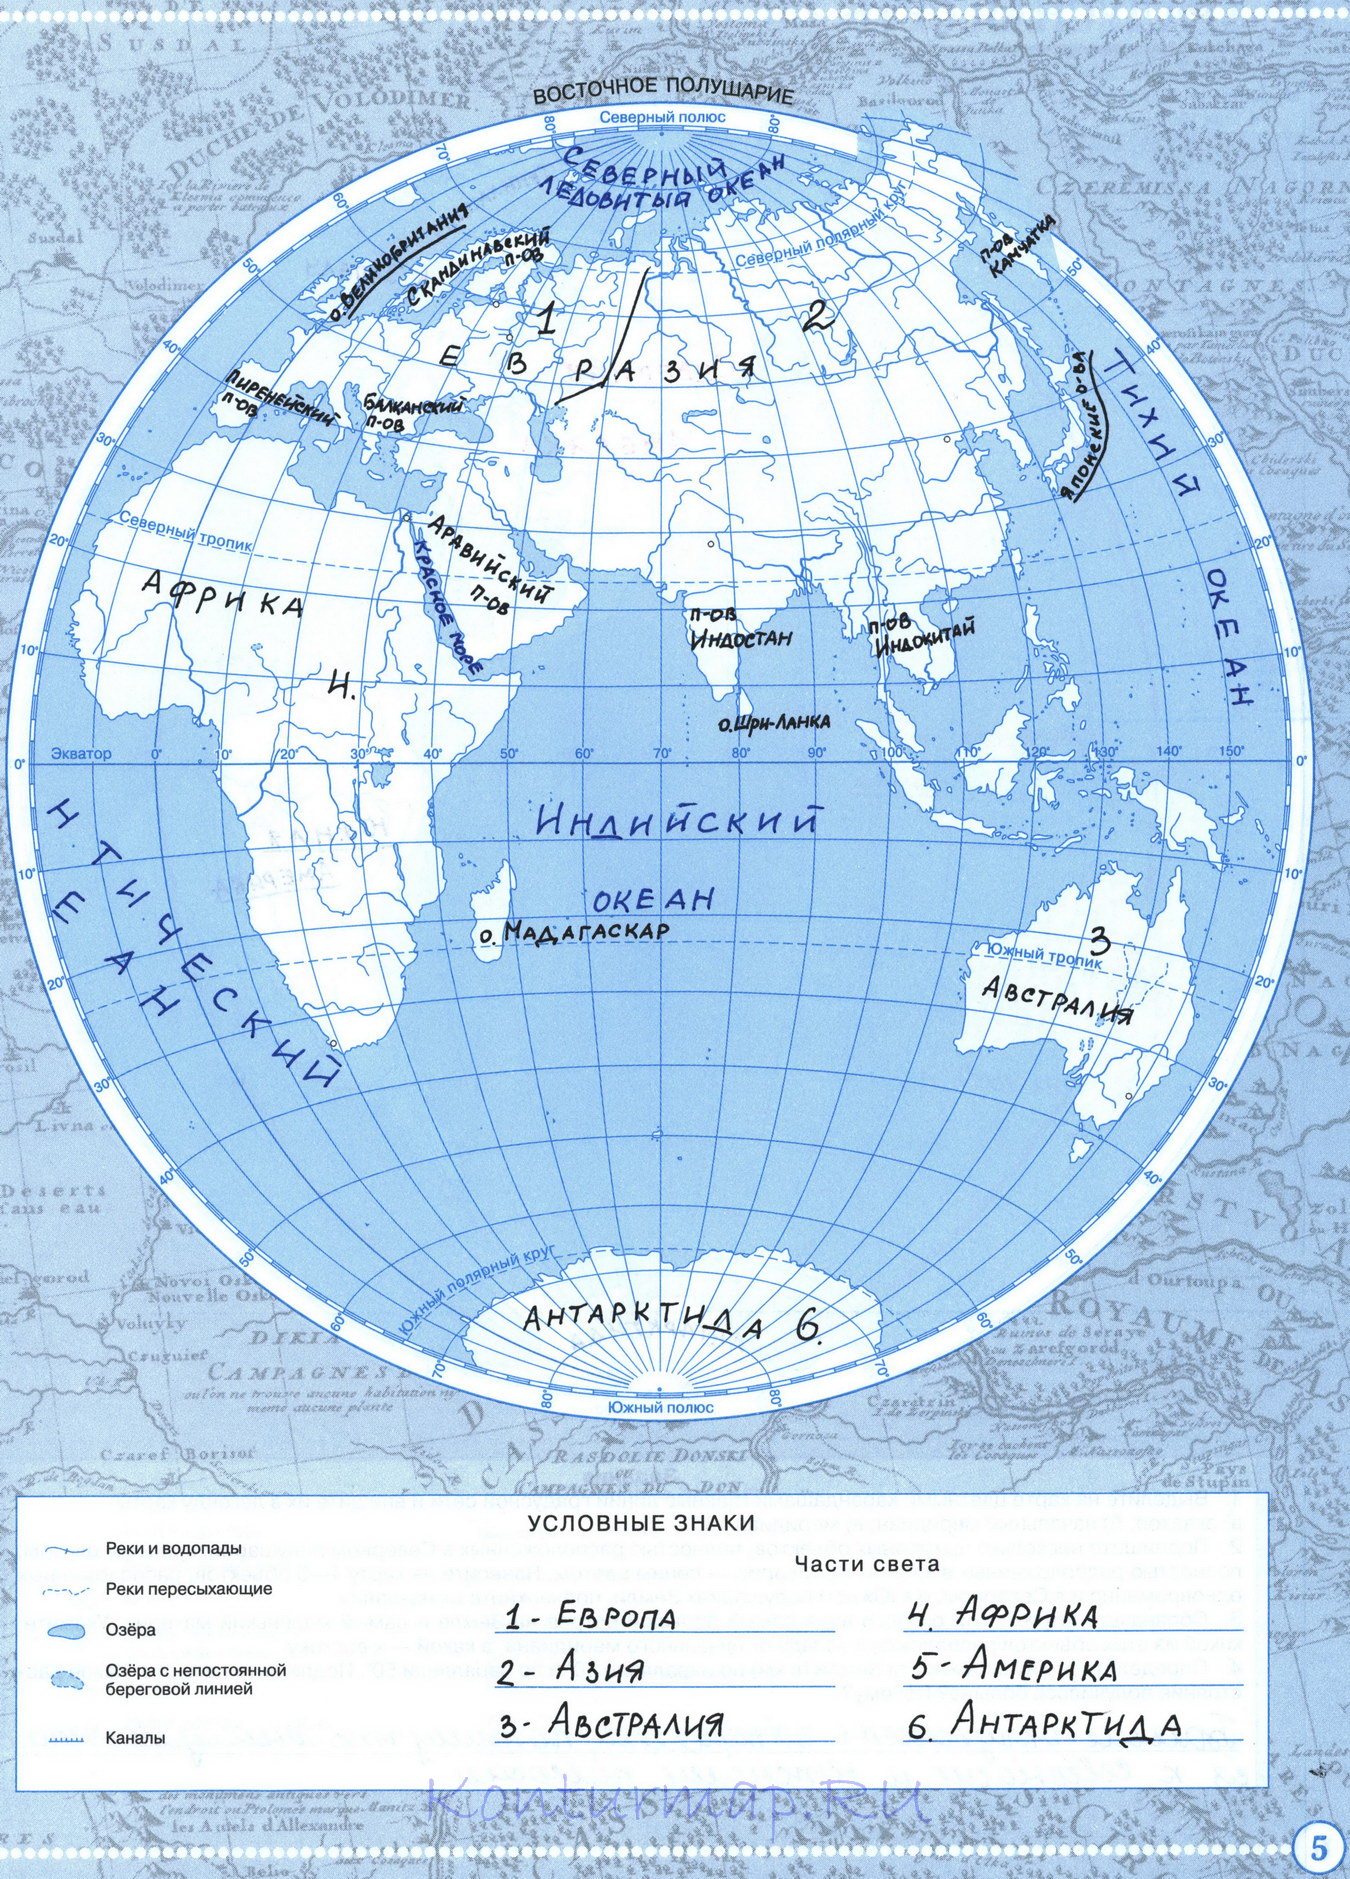 Гдз по контурной карте 6 класс дрофа физическая карта полушарий